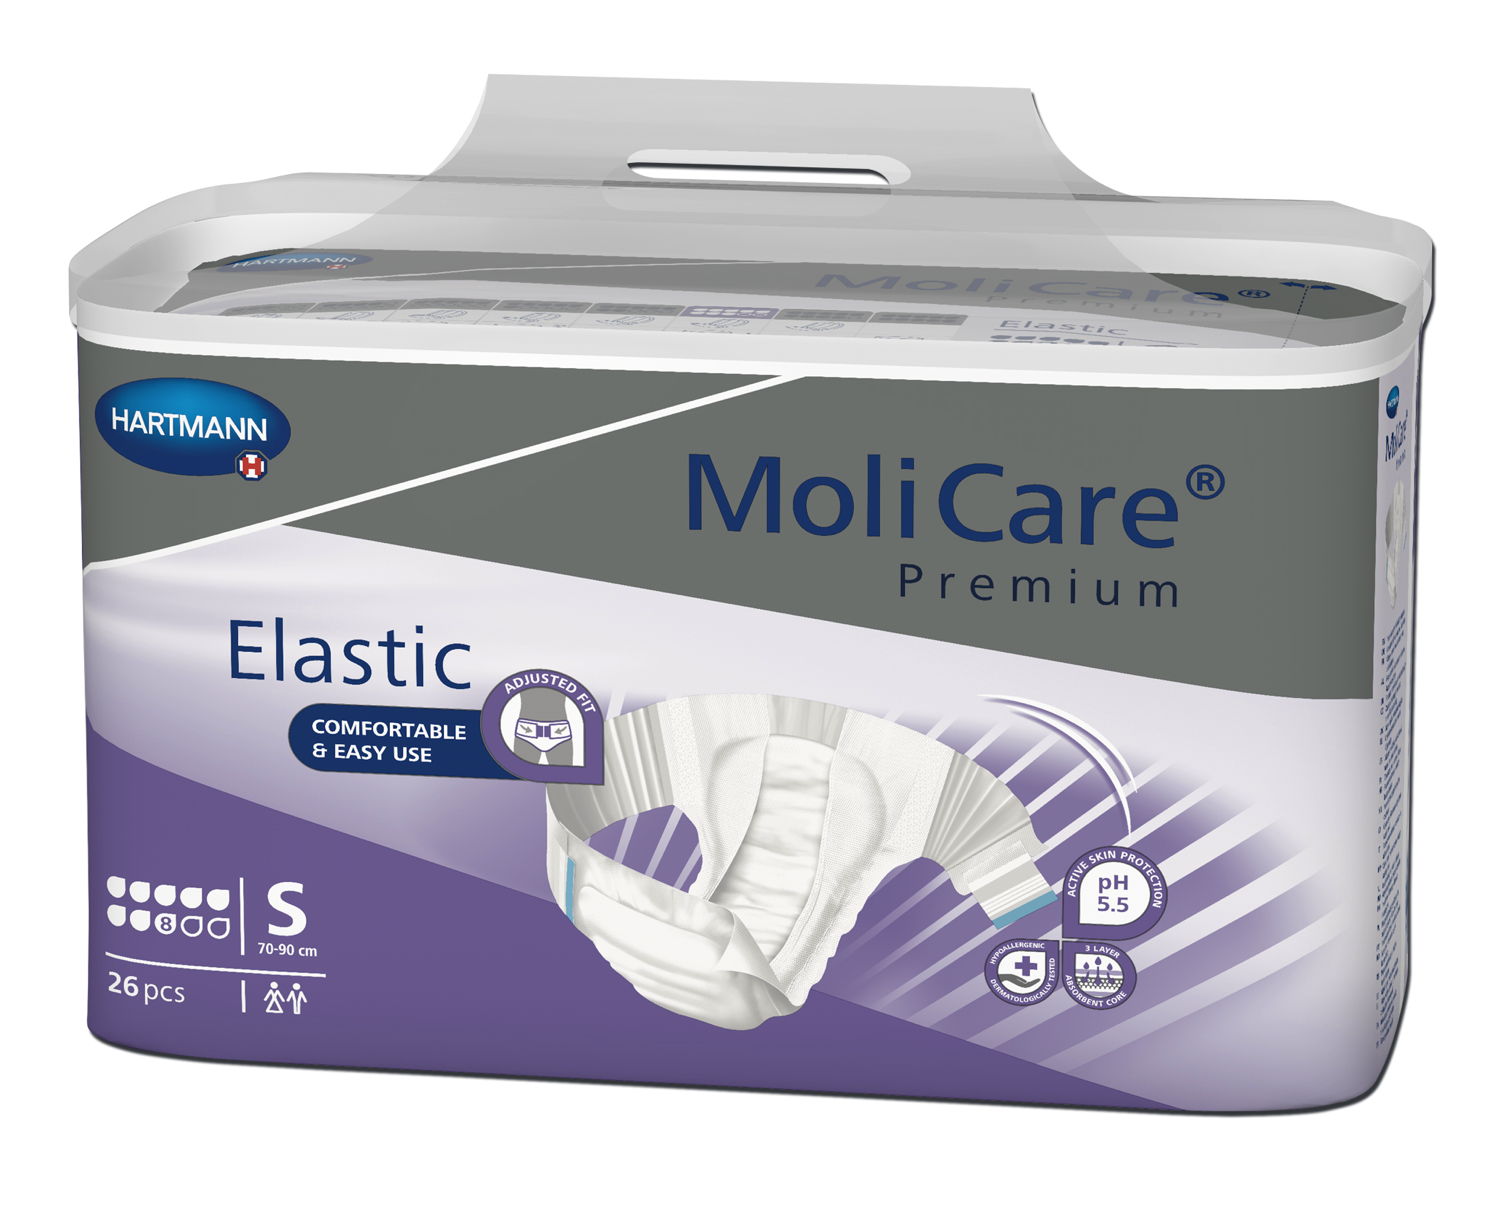 MoliCare Premium Elastic 8 Tropfen